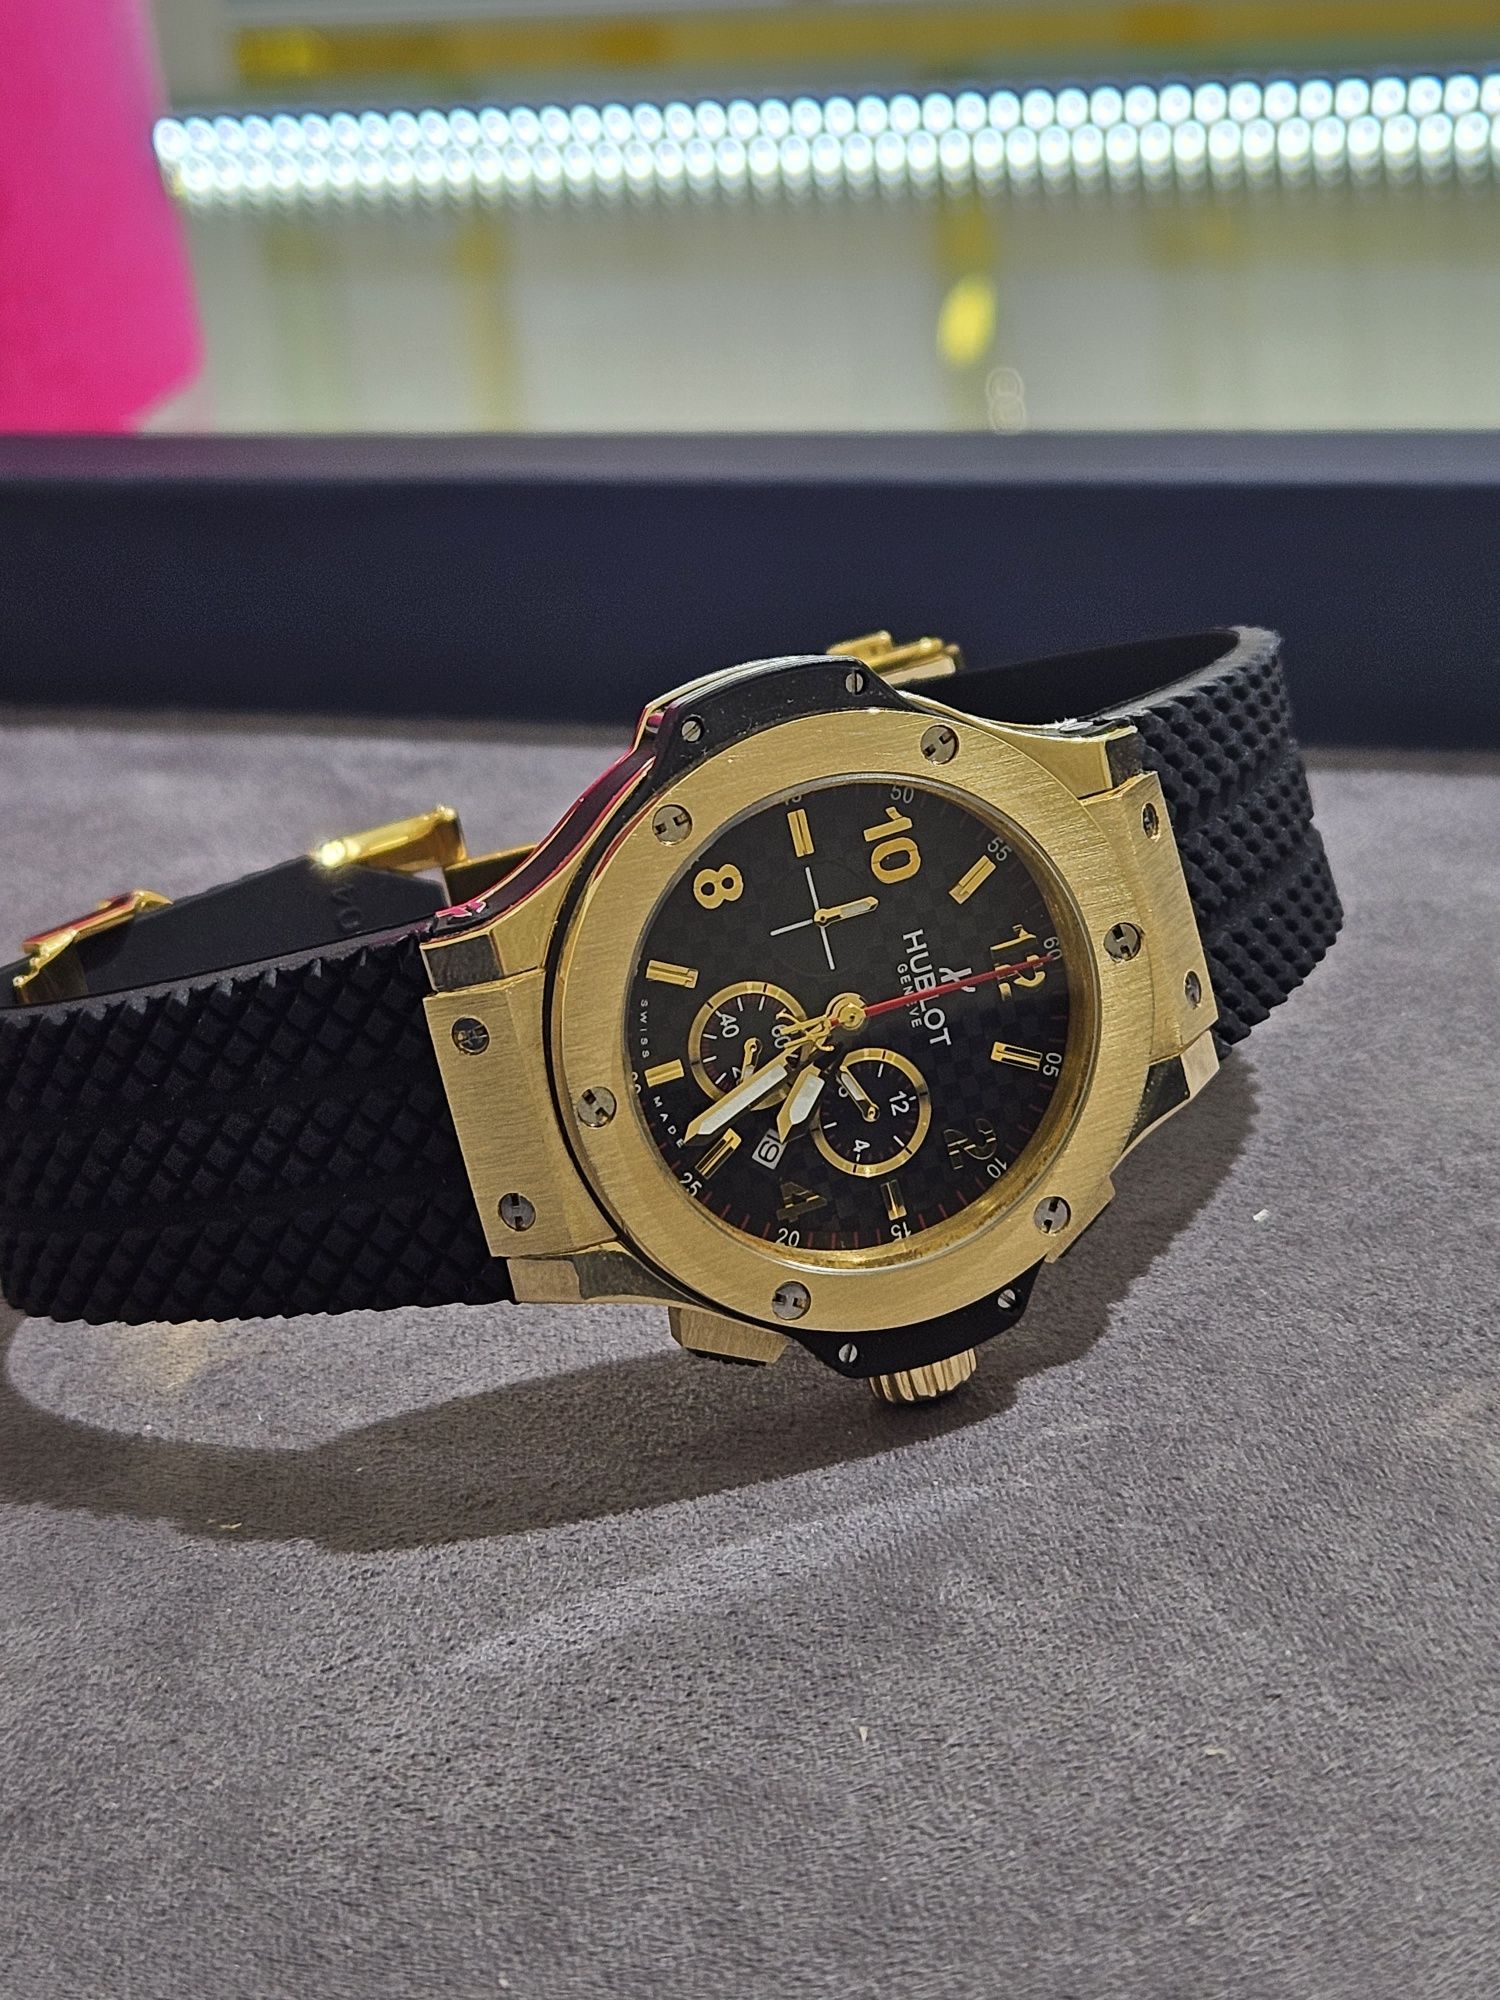 Продам золотые часы Хублот, для спортивных и брутальных мужчин.